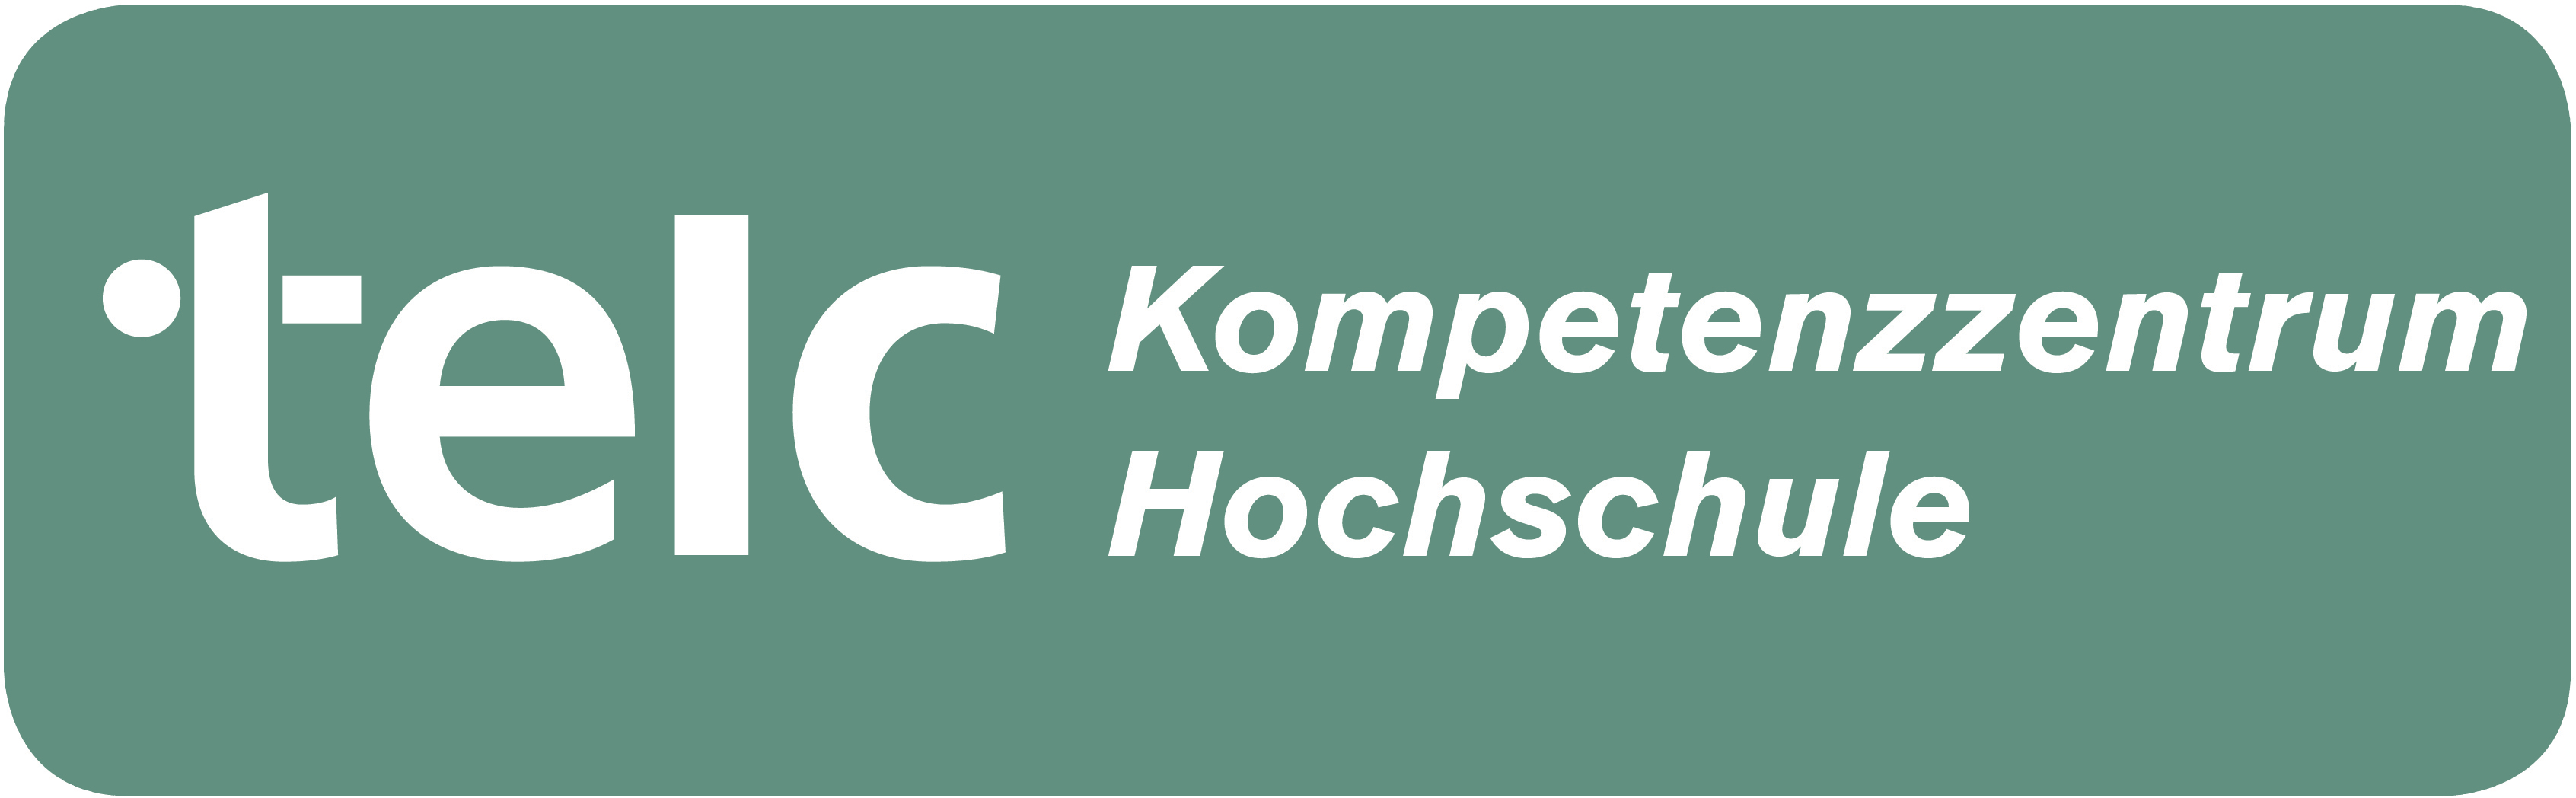 Logo_Kompetenzzentrum_Hochschule